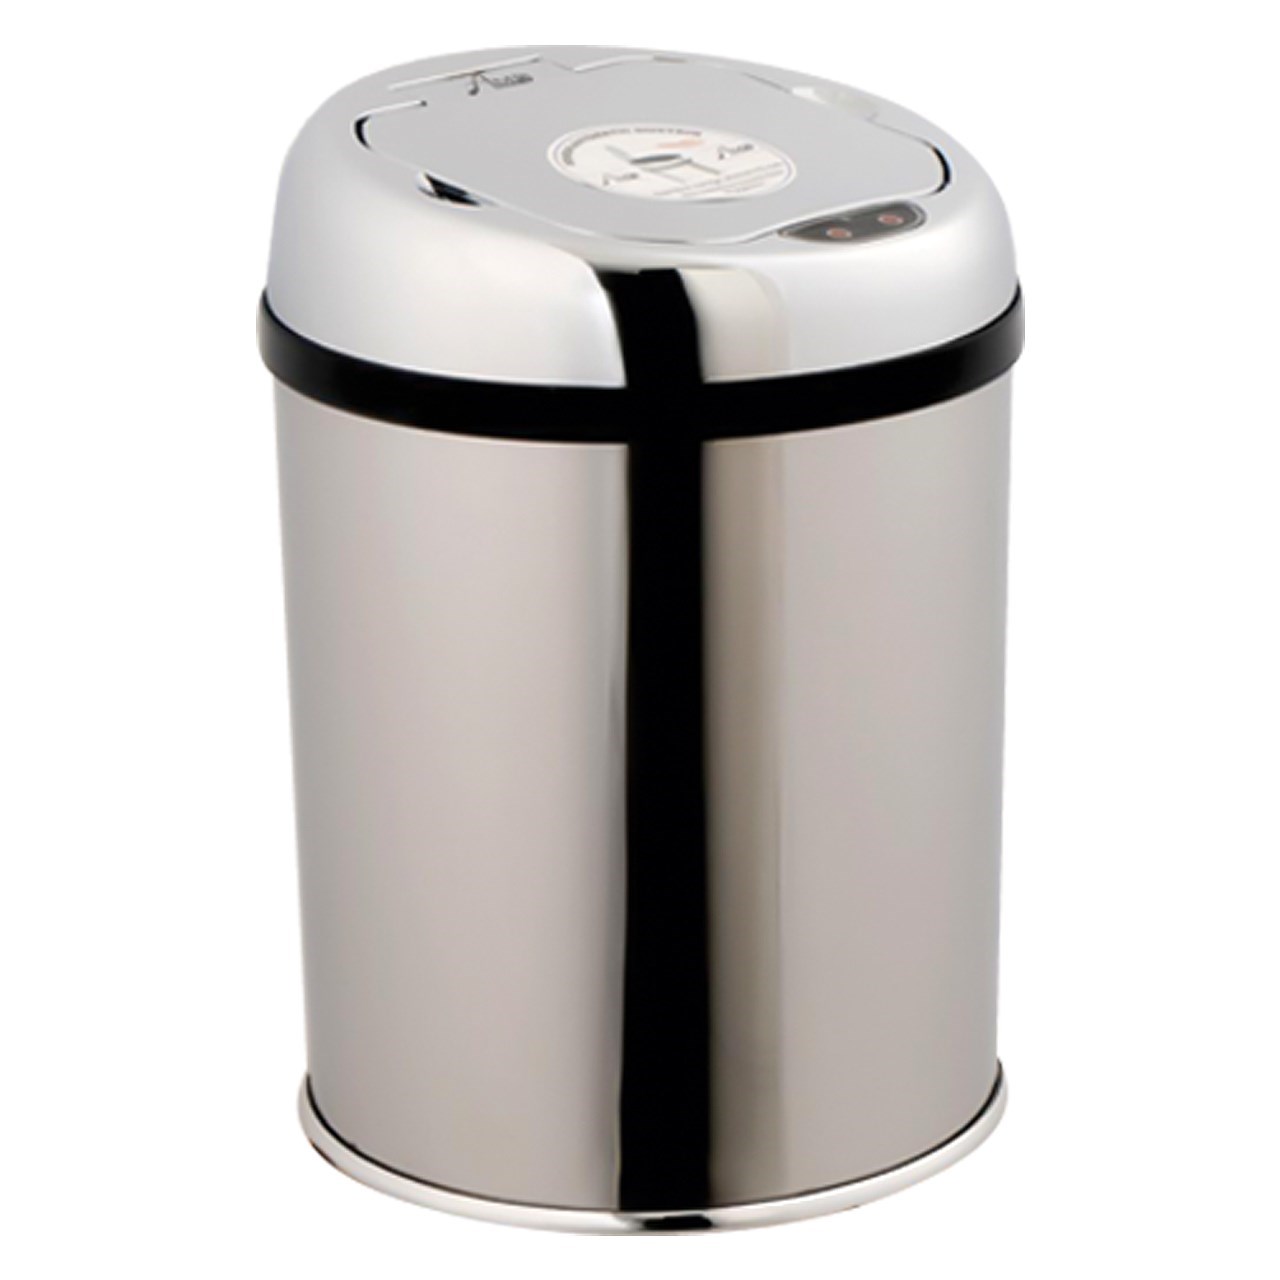 سطل زباله هوشمند3 لیتری مدلSYZ-03LA